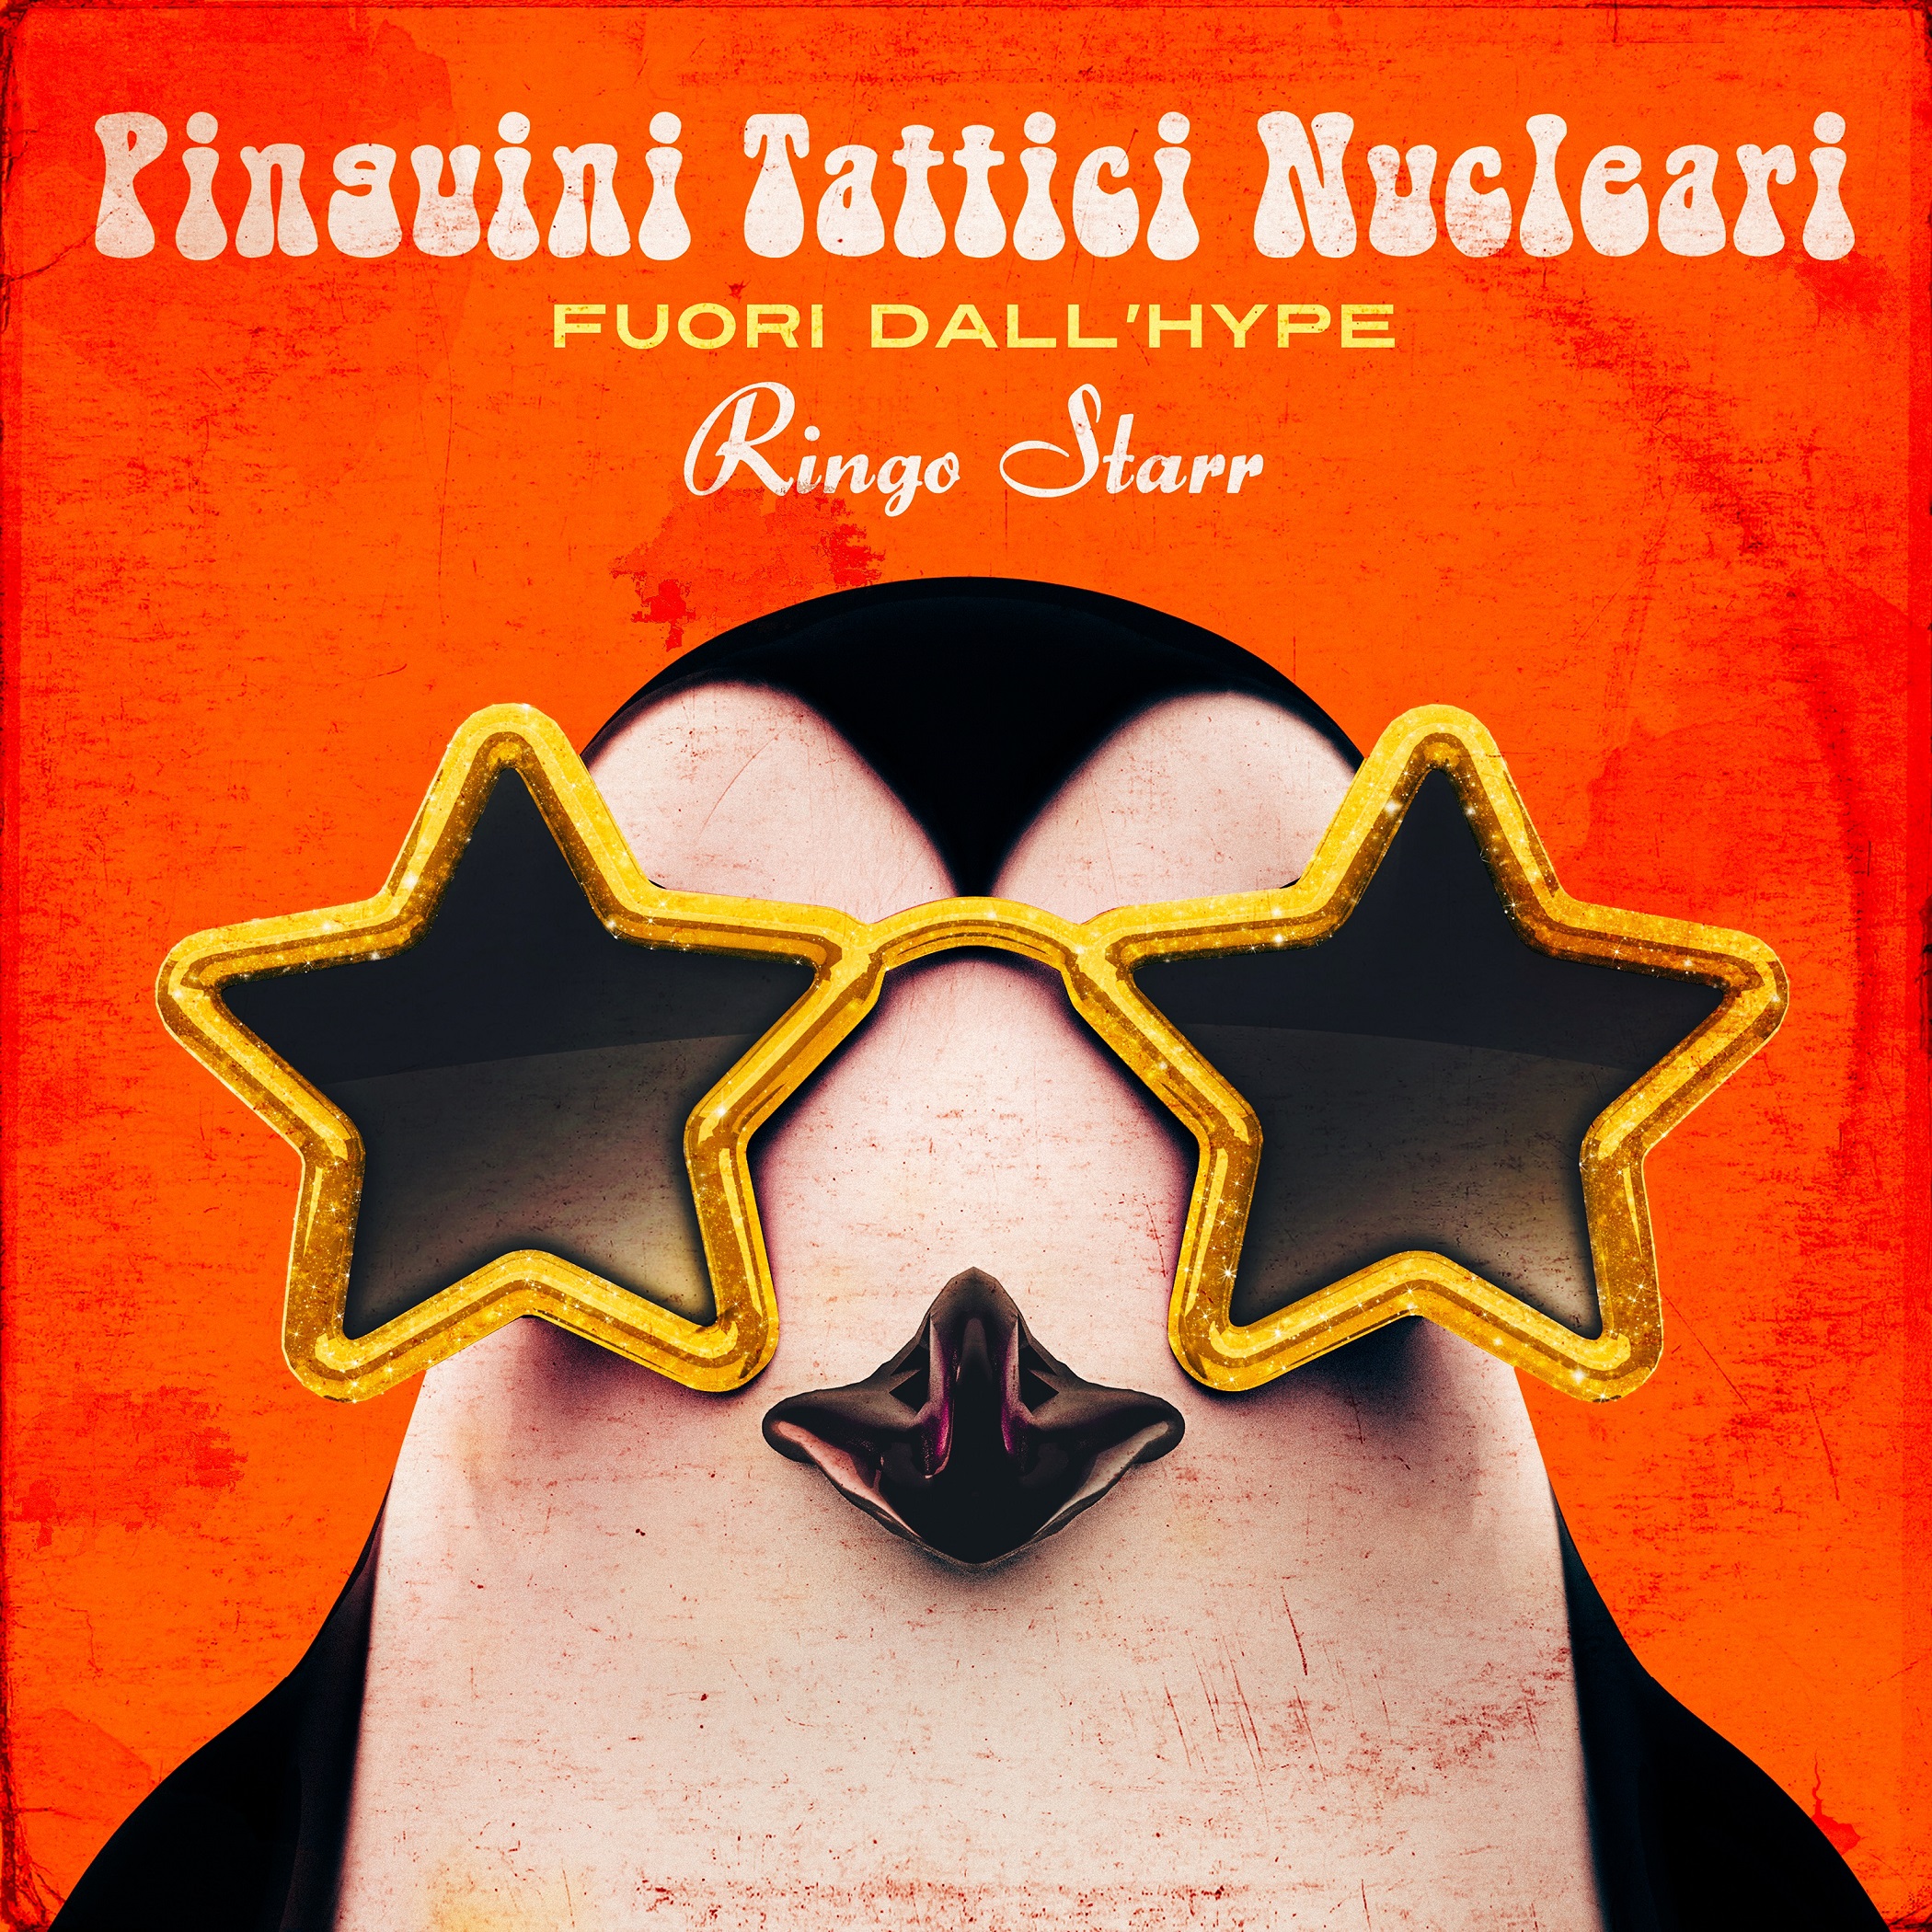 Pinguini Tattici Nucleari a Sanremo 2020 con "Ringo Starr": testo, audio, significato